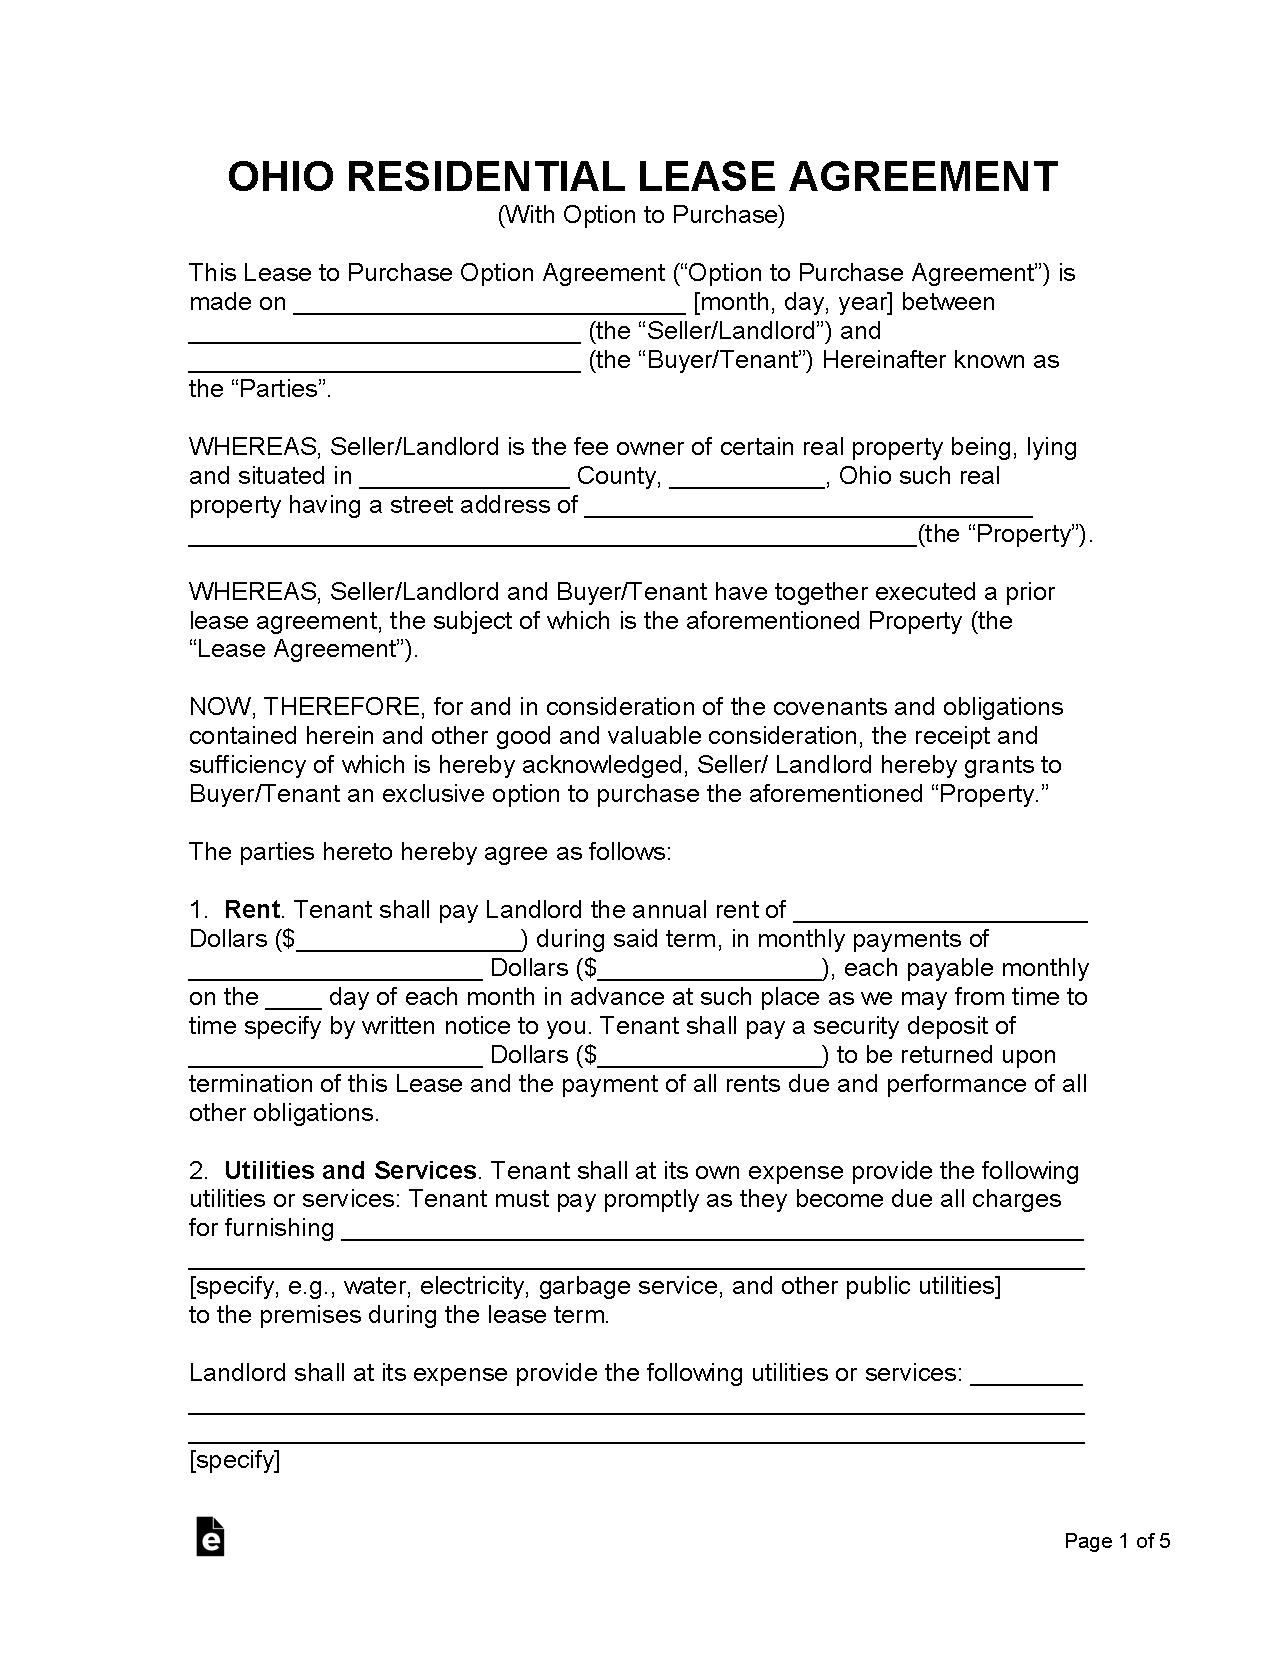 free-ohio-lease-agreement-templates-6-pdf-word-rtf